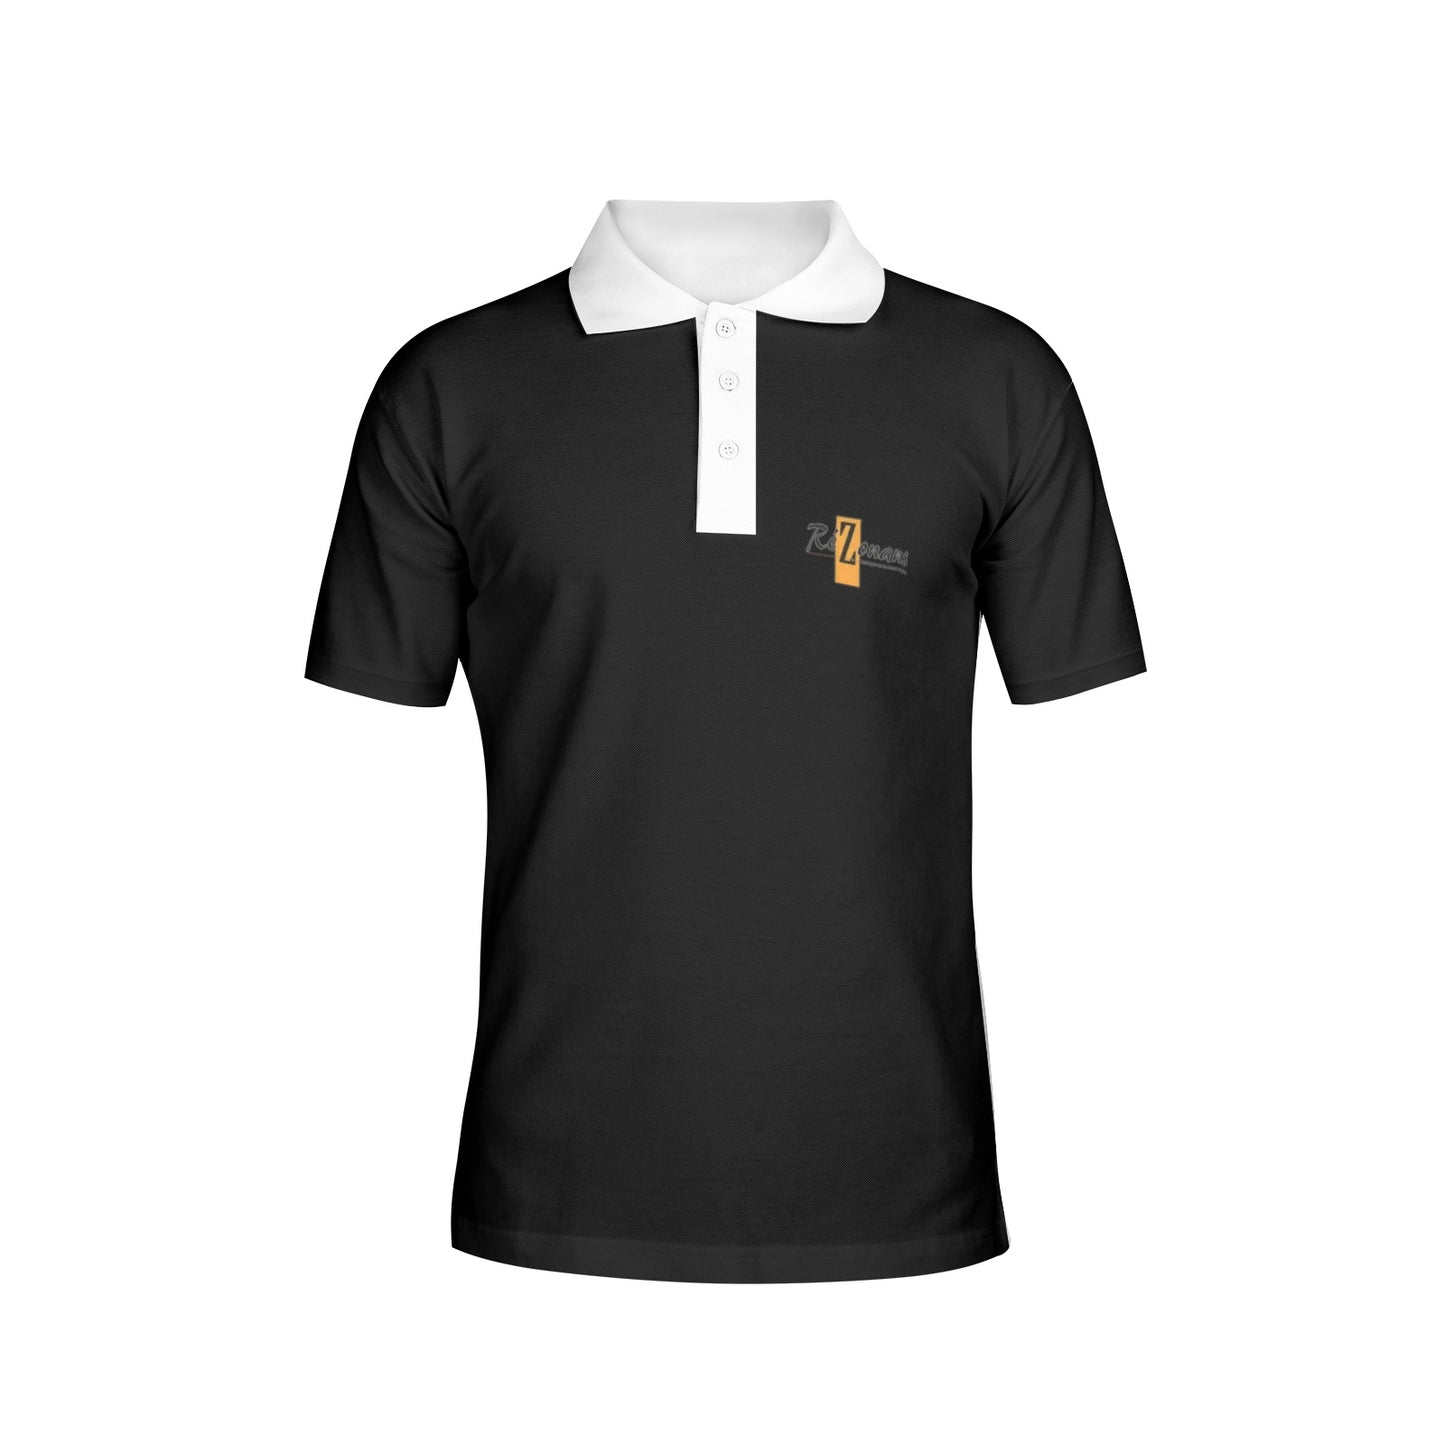 "Blackone" collector's polo shirt